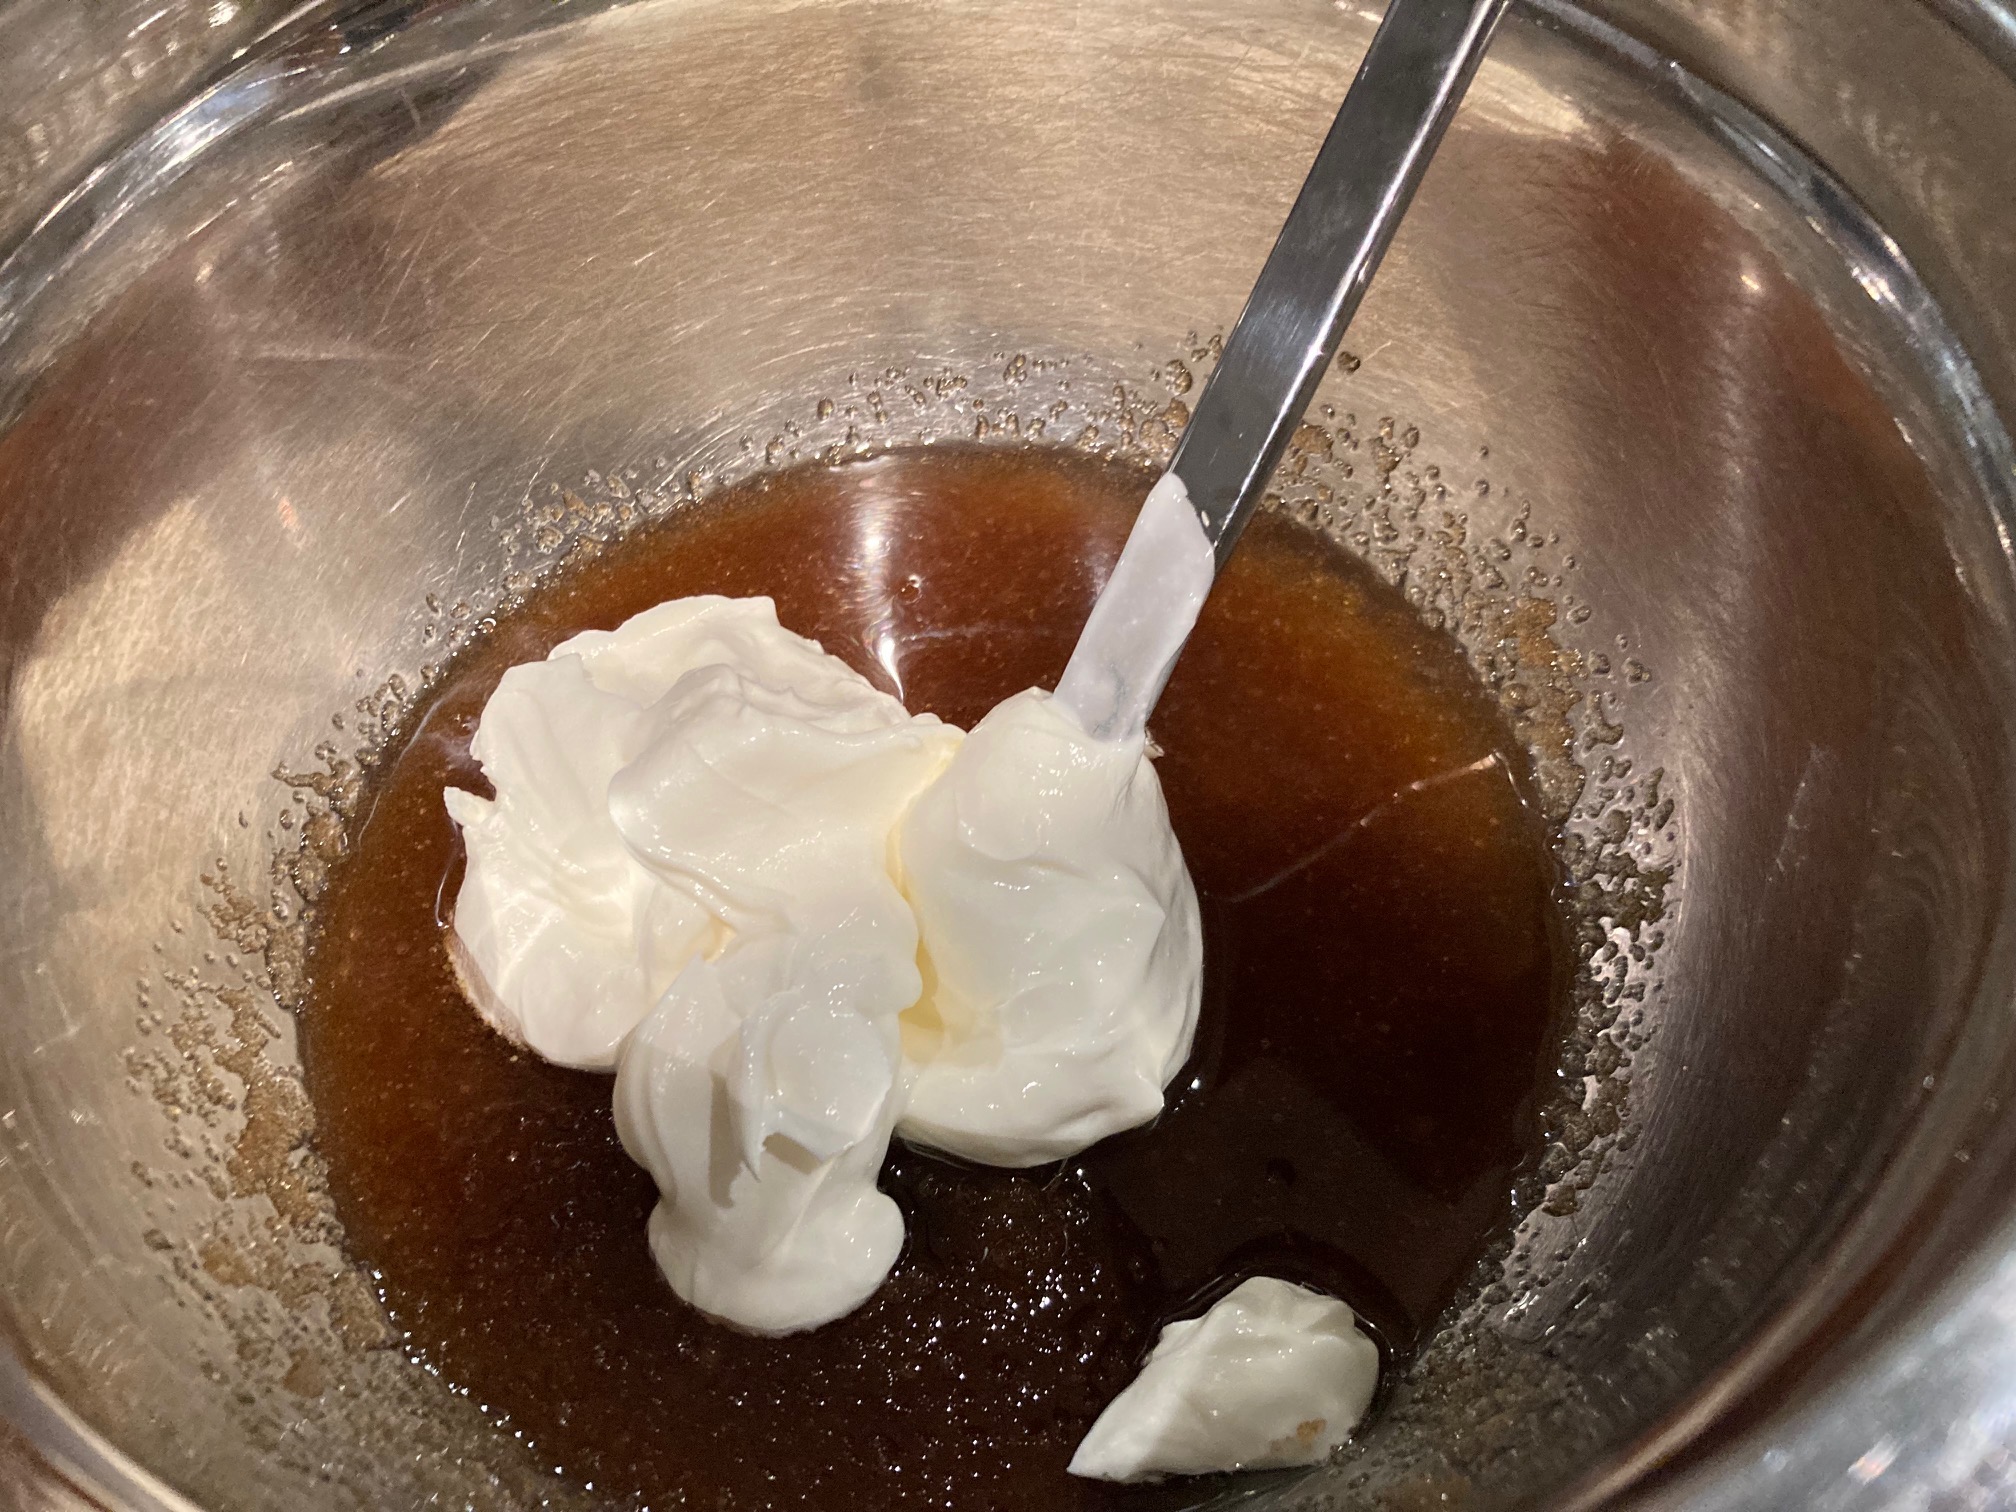 Adding sour cream